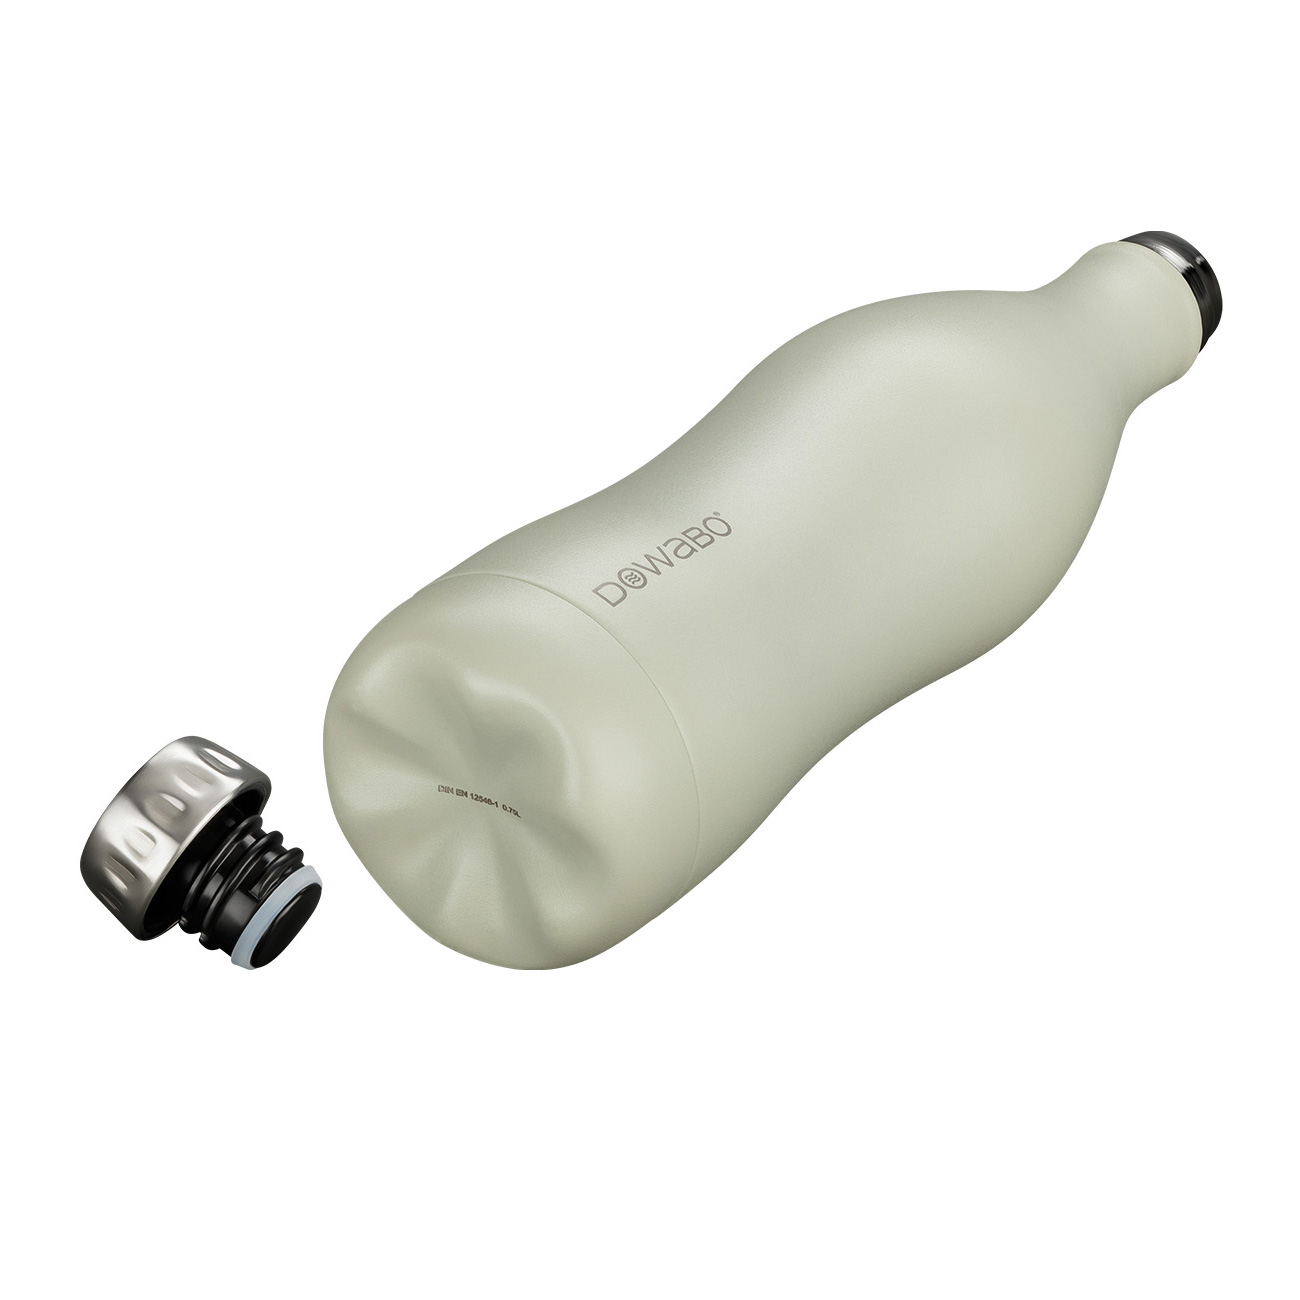 Dowabo Isolierflasche kohlensäuredicht 0,5 Liter beige matt Bild 1